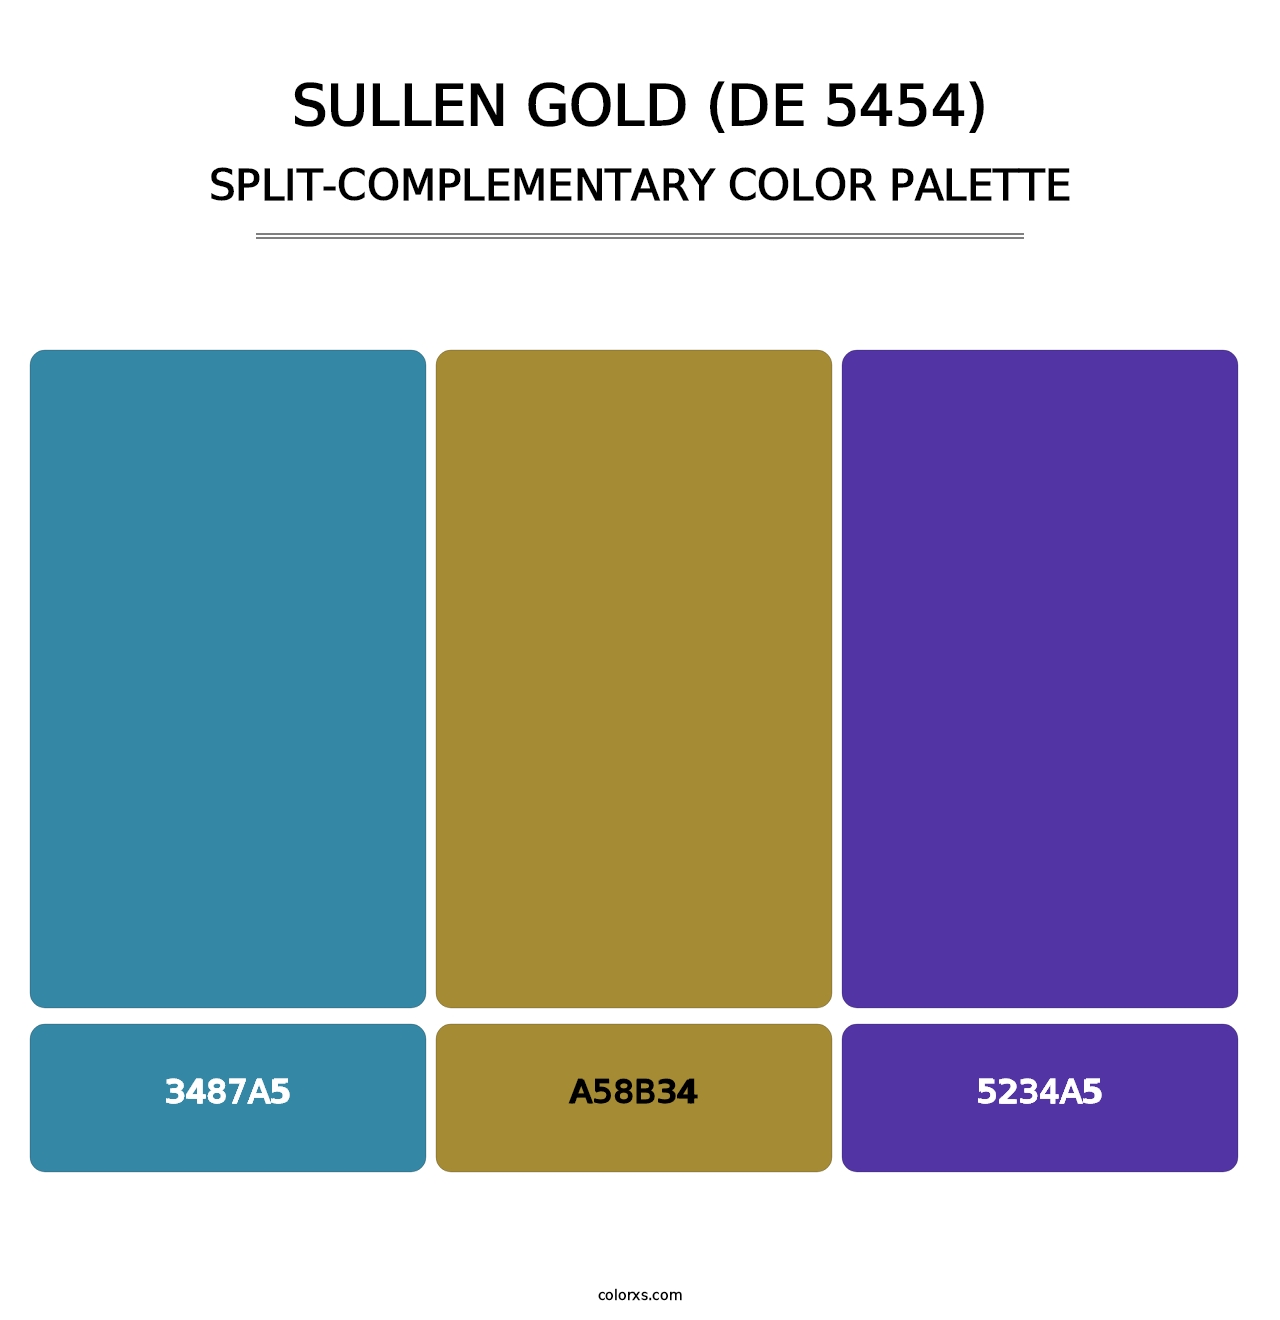 Sullen Gold (DE 5454) - Split-Complementary Color Palette